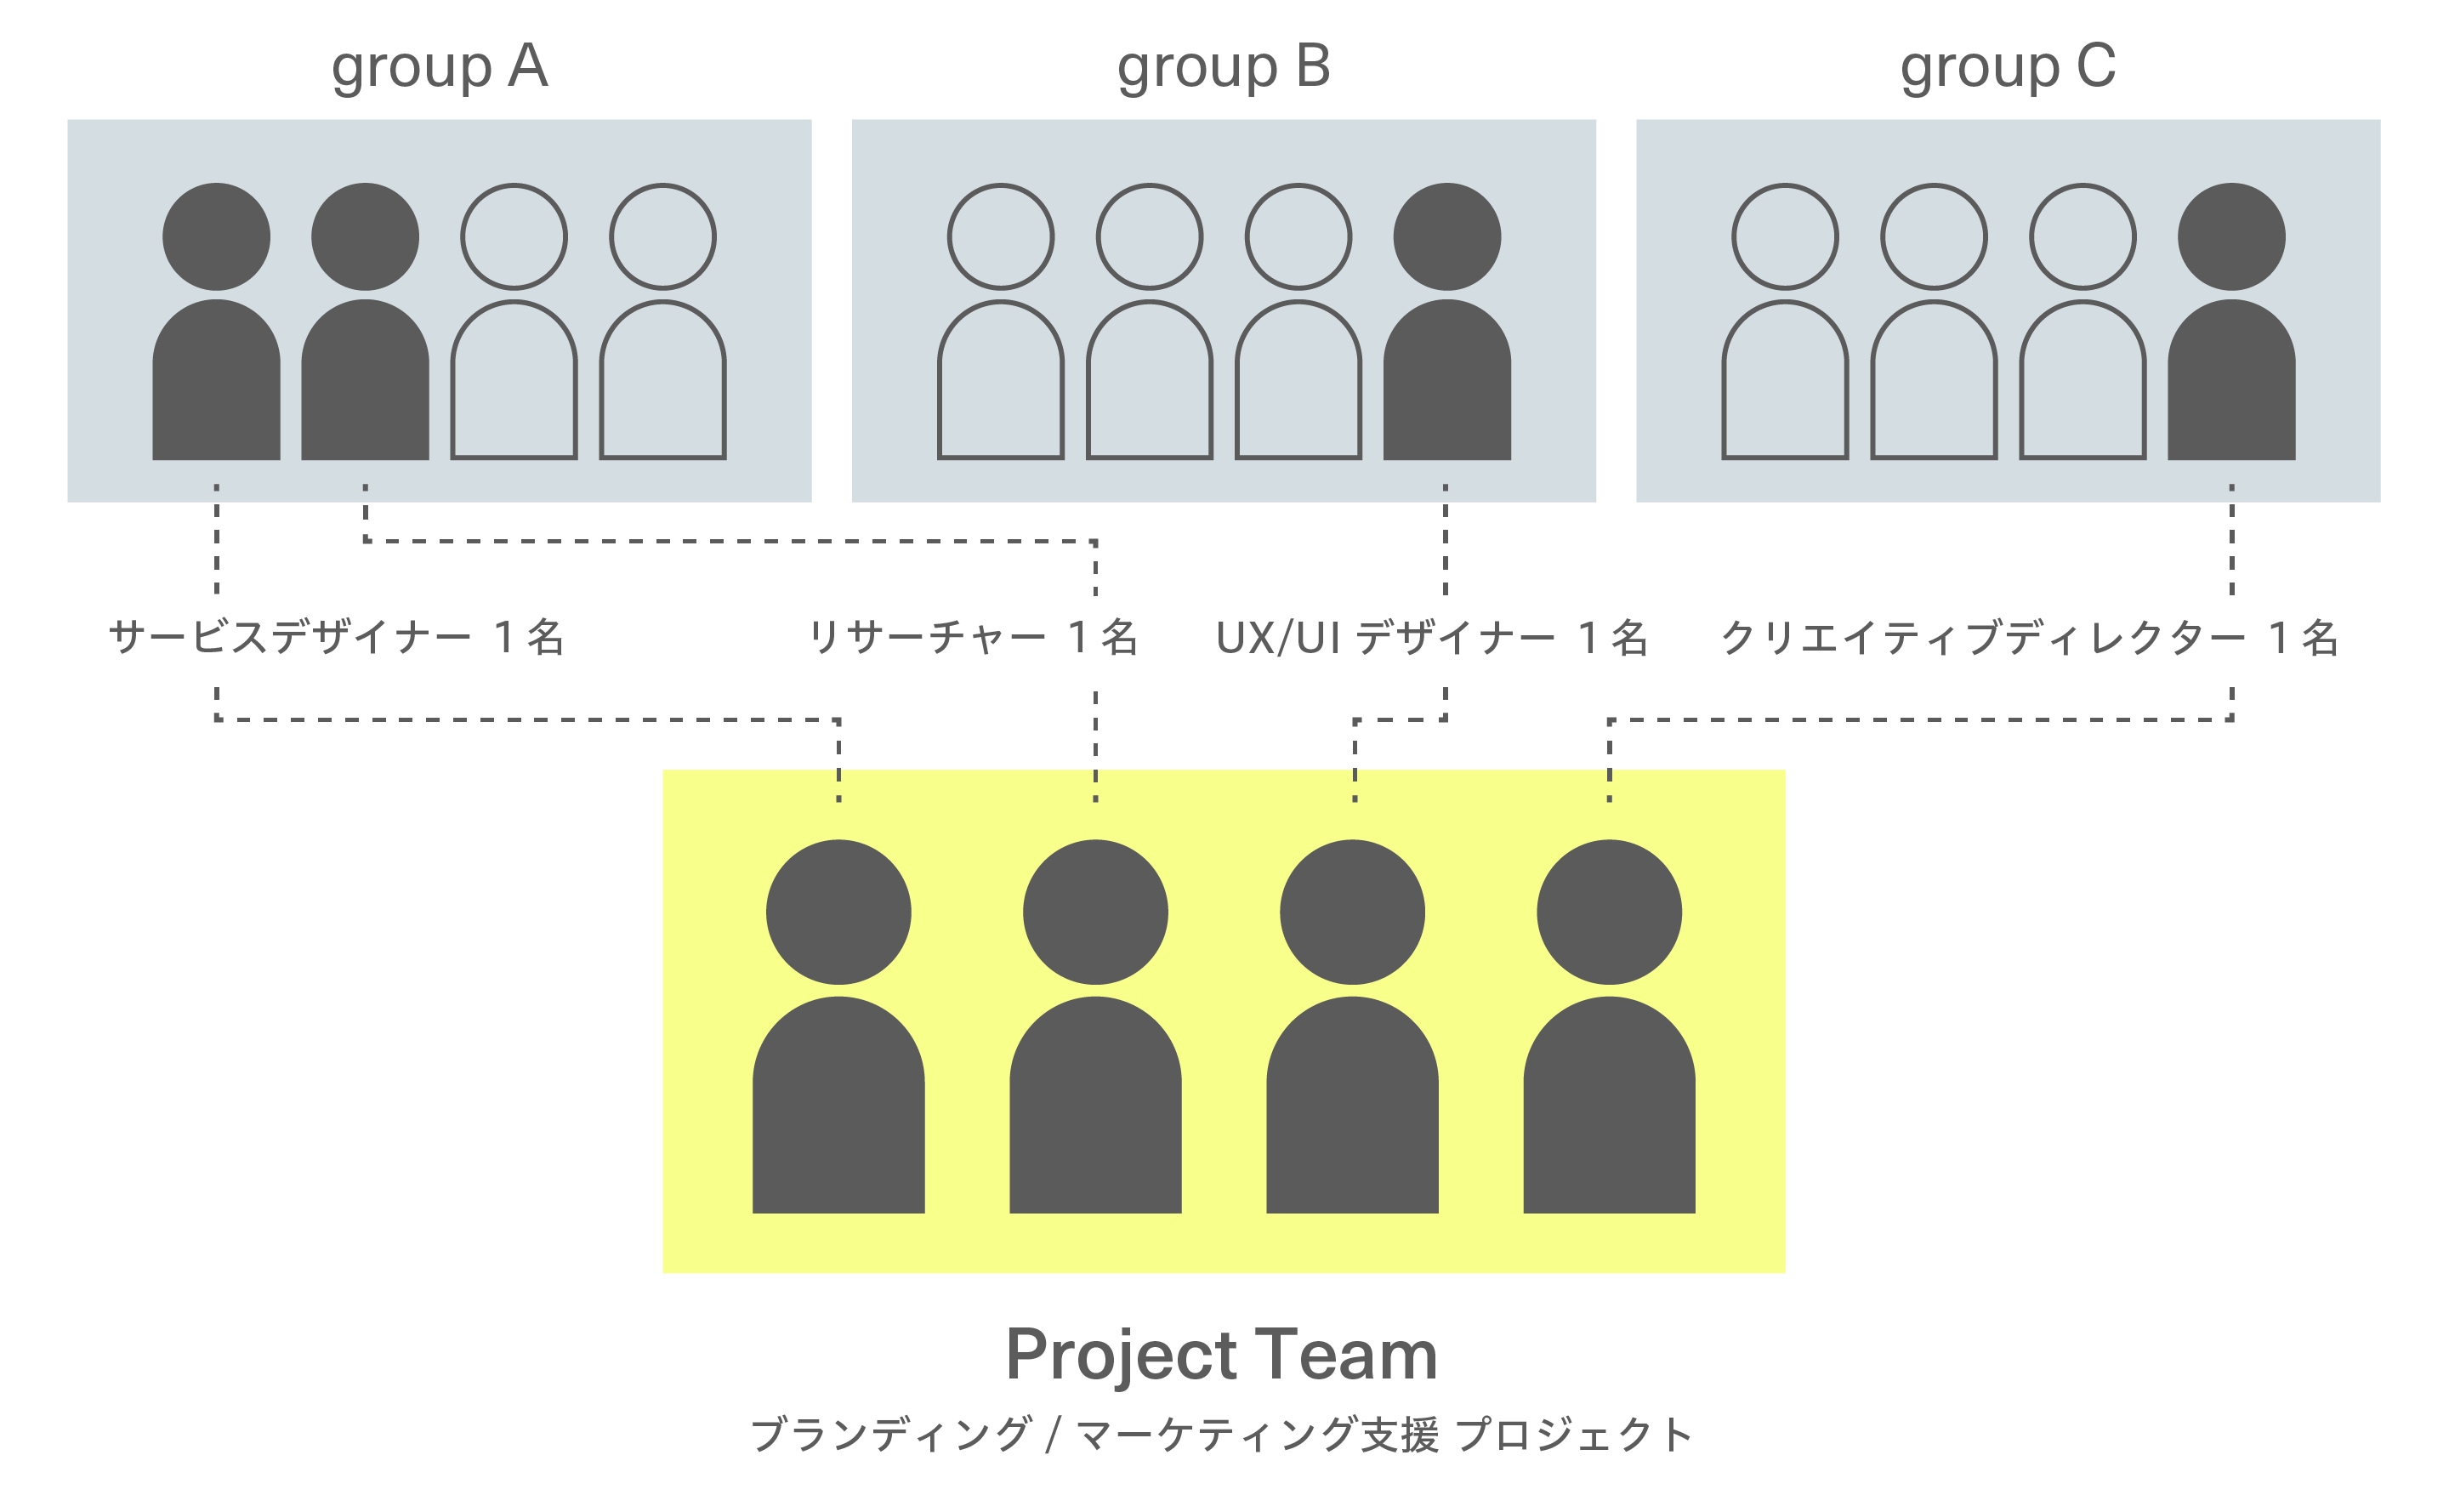 プロジェクトチームの組成の例を示した図。例では、サービスデザイナー・リサーチャー・UX/UIデザイナー・クリエイティブディレクターが集まってブランディング・マーケティング支援のプロジェクトチームが組成されている。